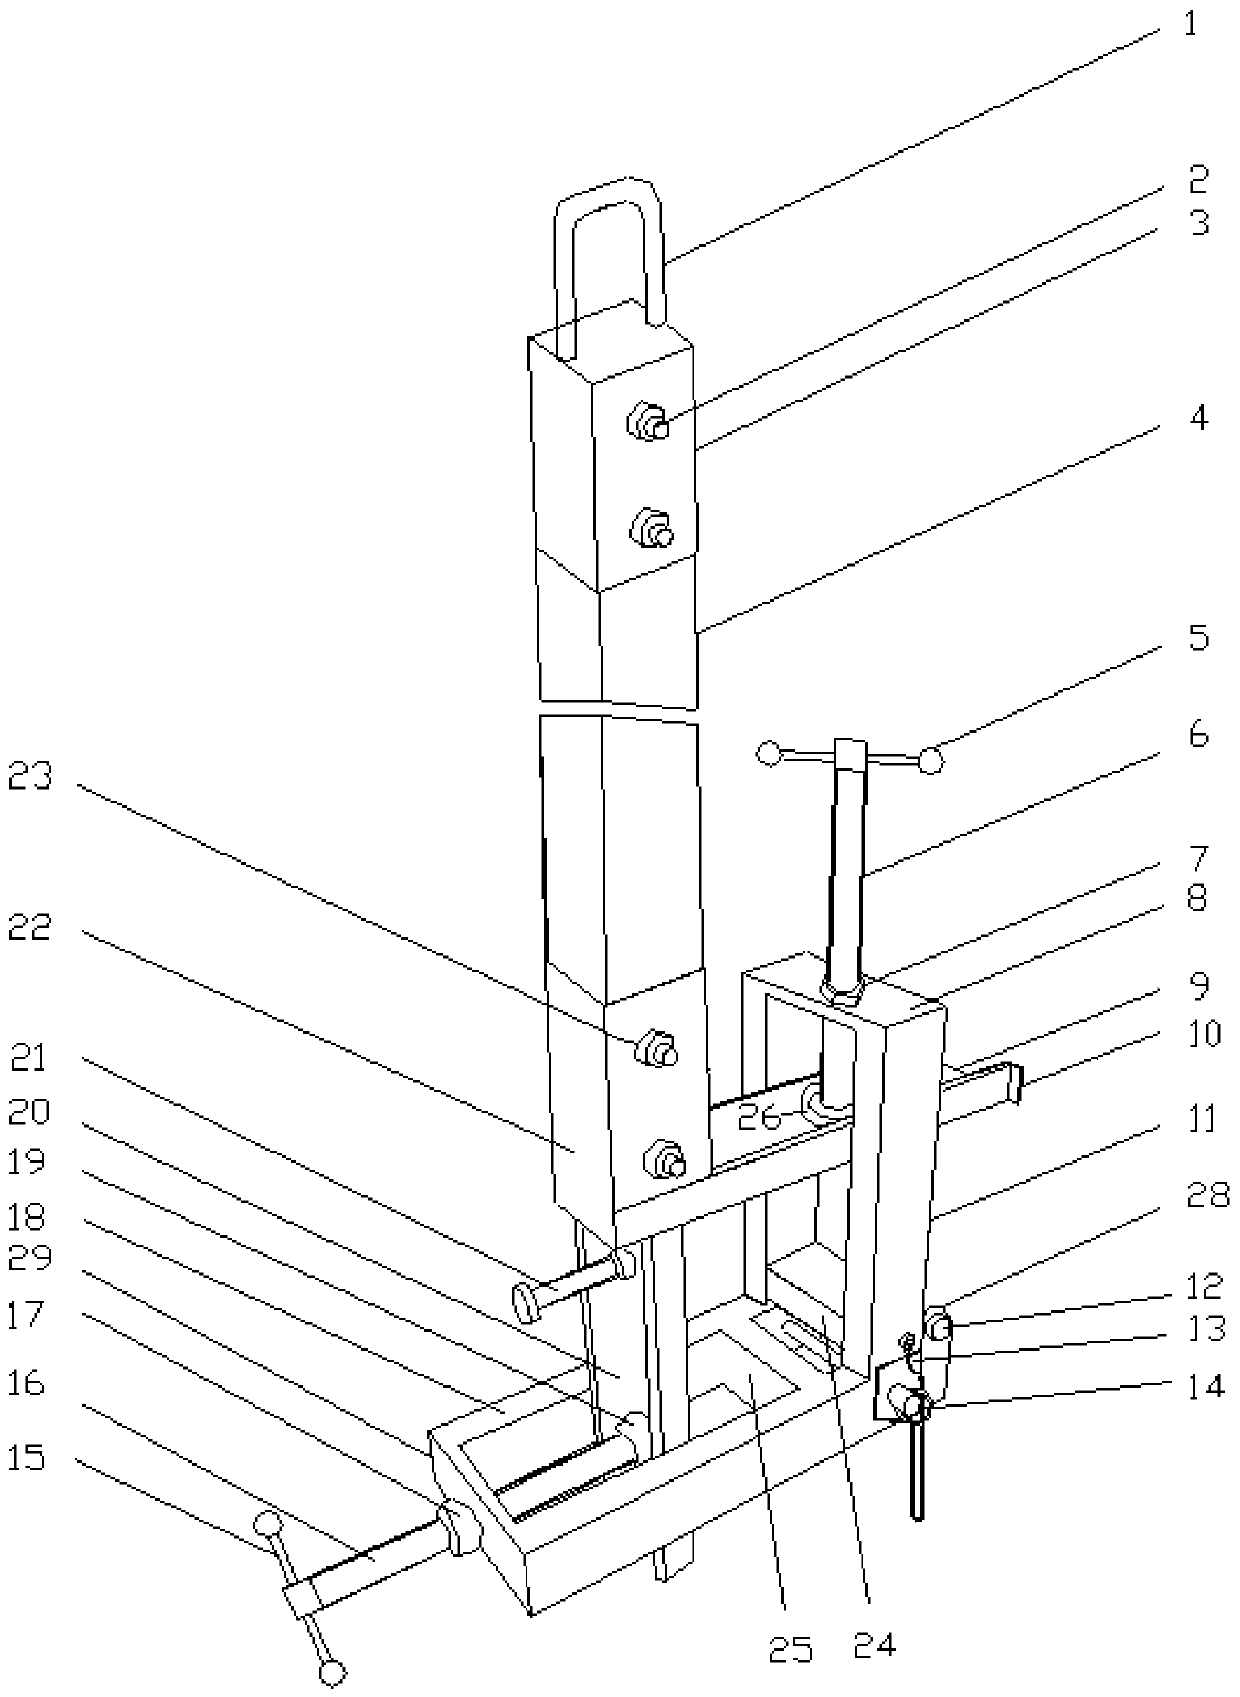 Safety belt hanger suitable for frameworks of multiple types